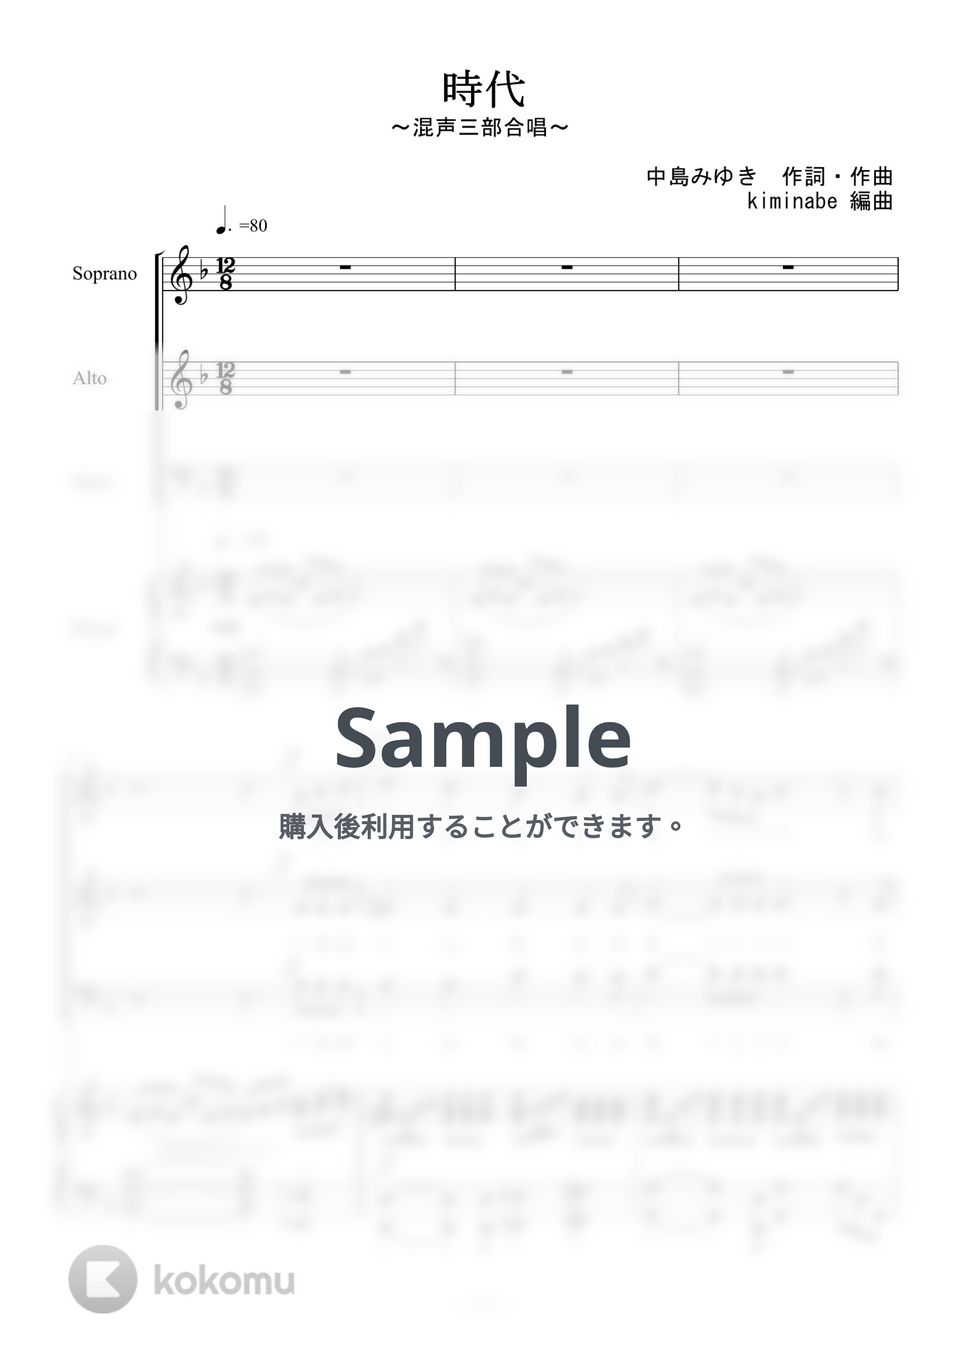 中島みゆき - 時代 (混声三部合唱) by kiminabe